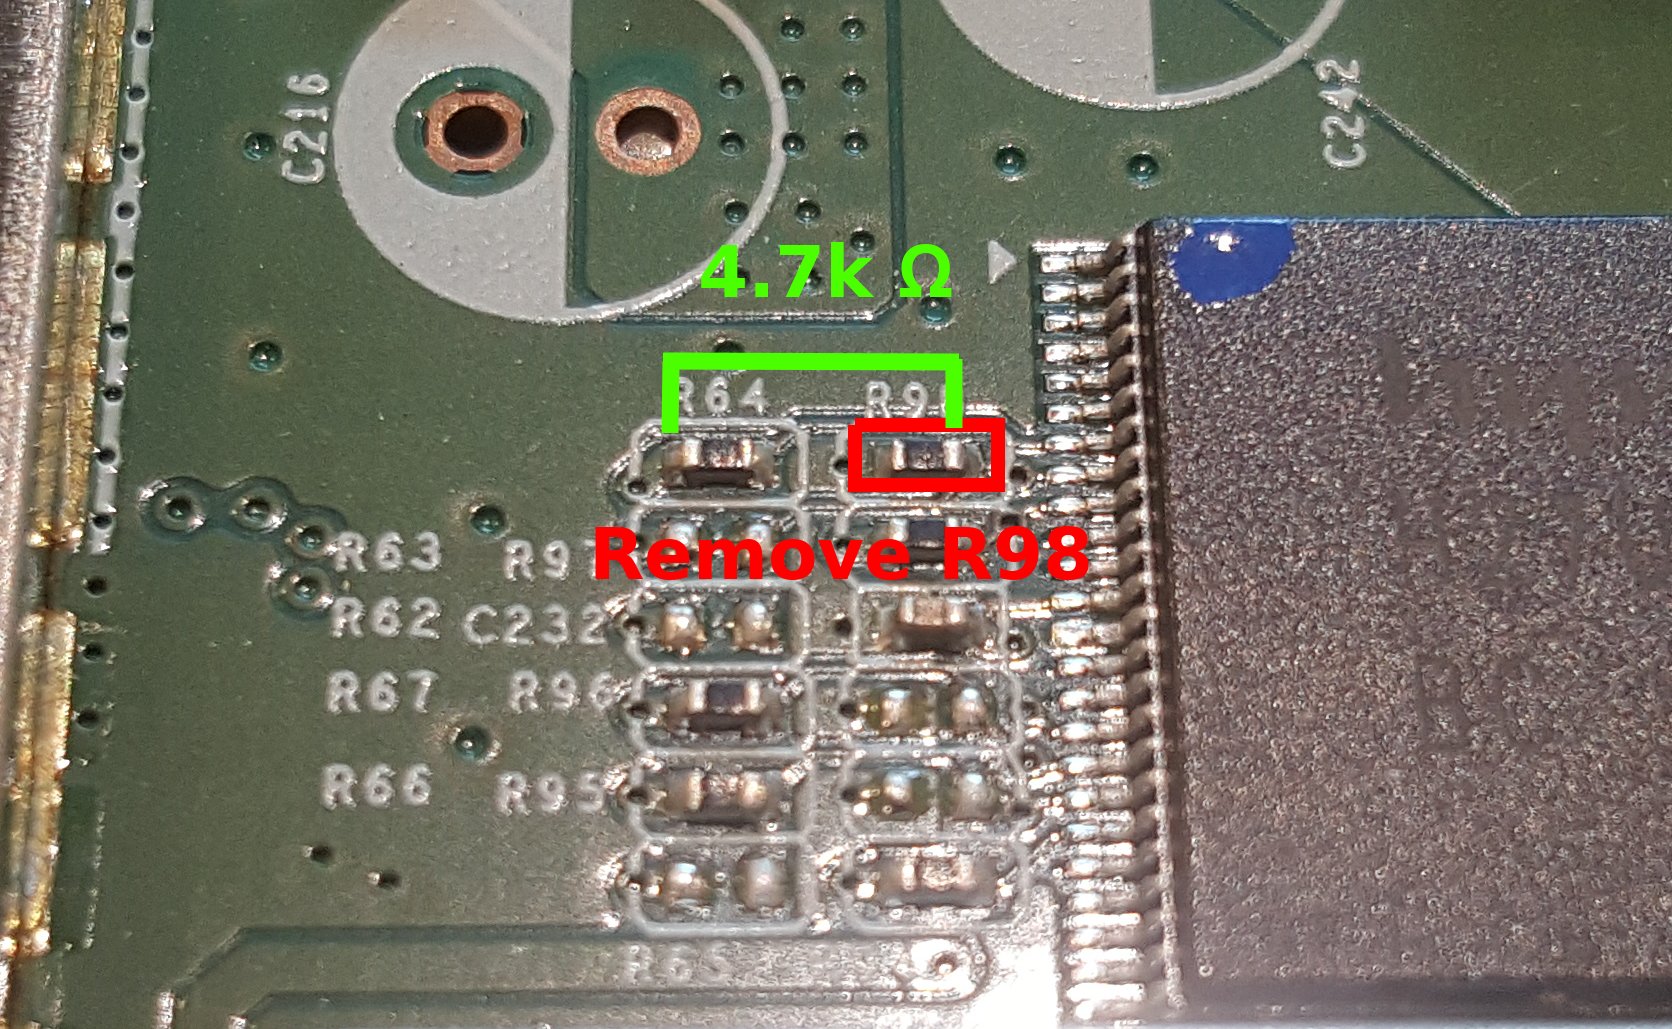 EA4x00 DDR Ratio Before